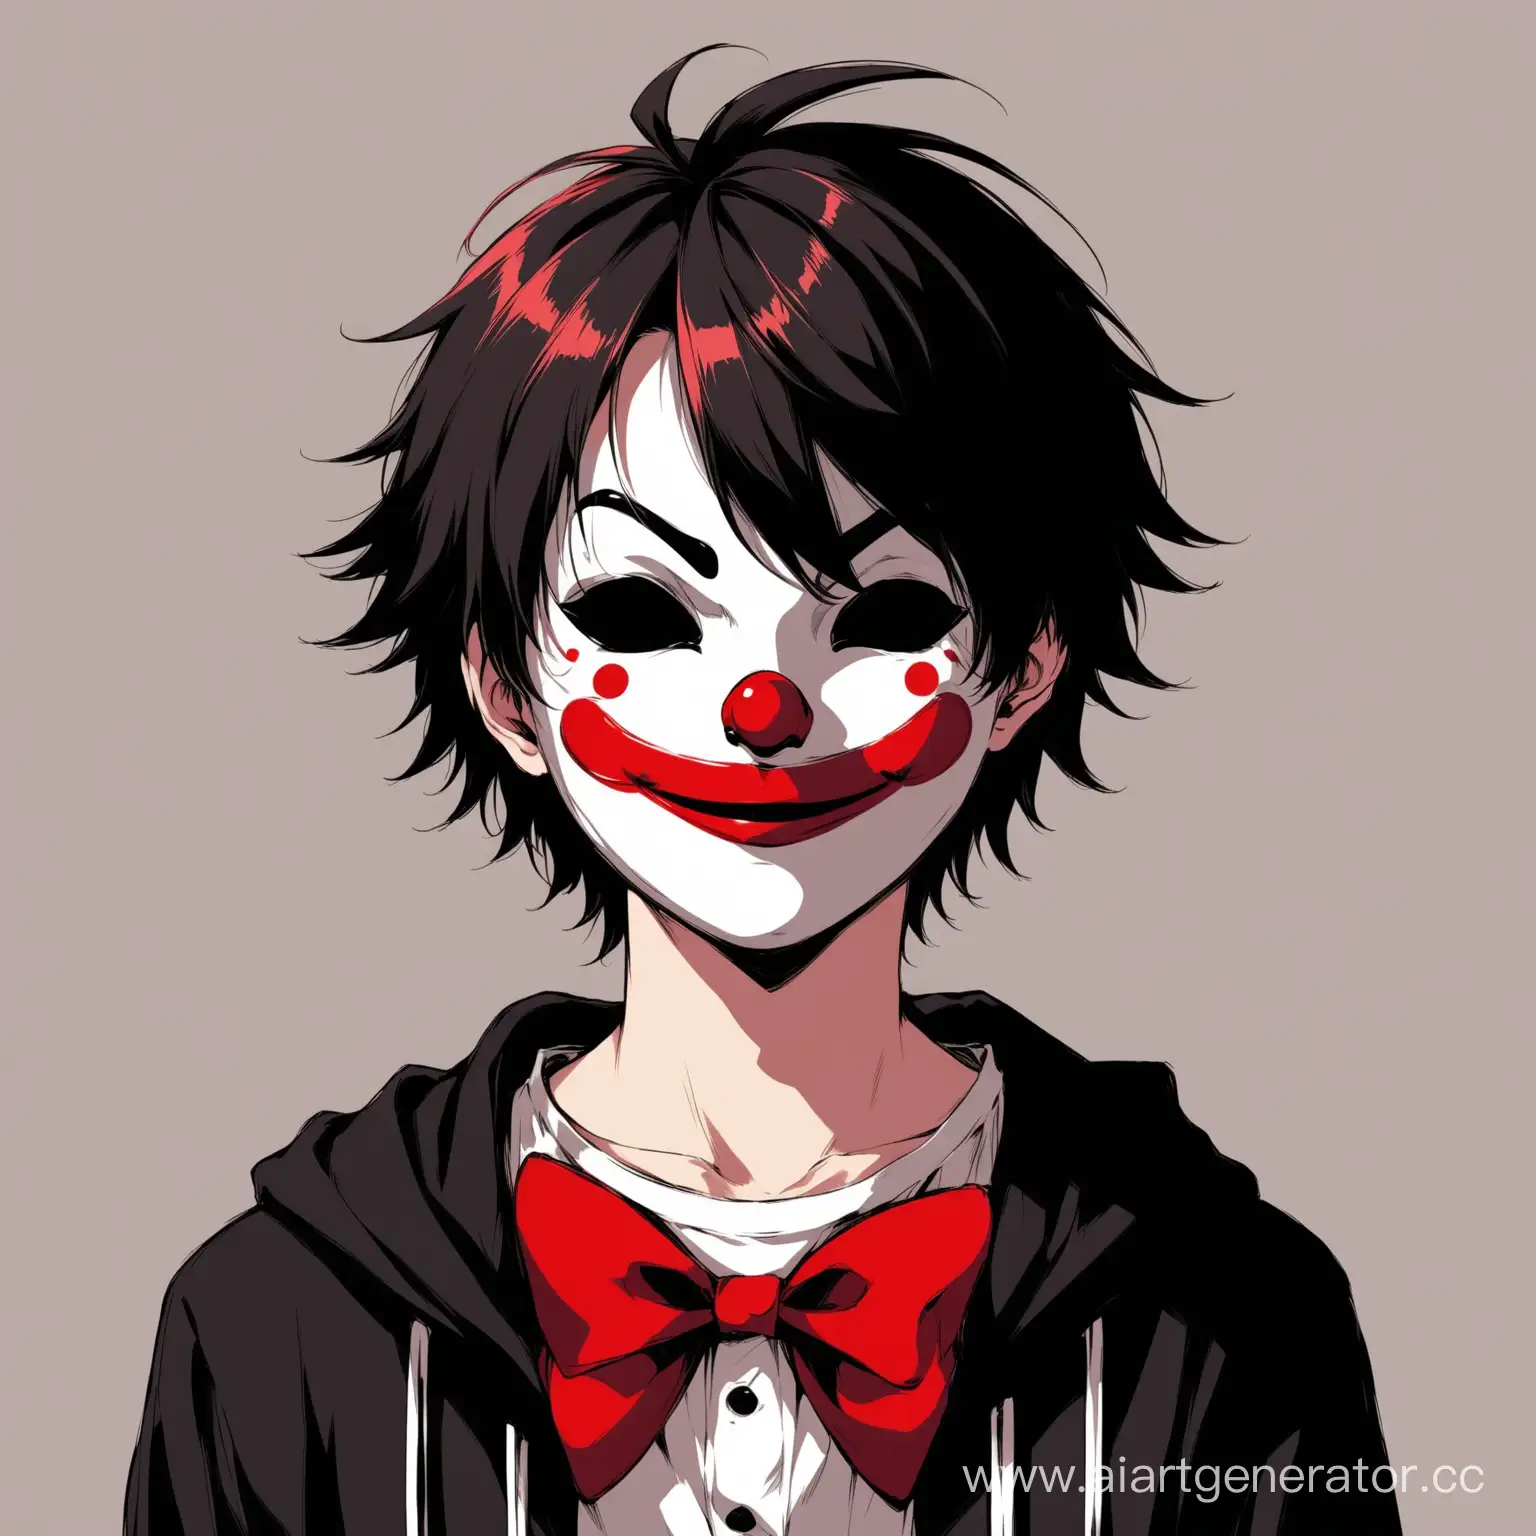 подросток мальчик с маской клоуна вместо лица в аниме стиле в черно красно белом цвете